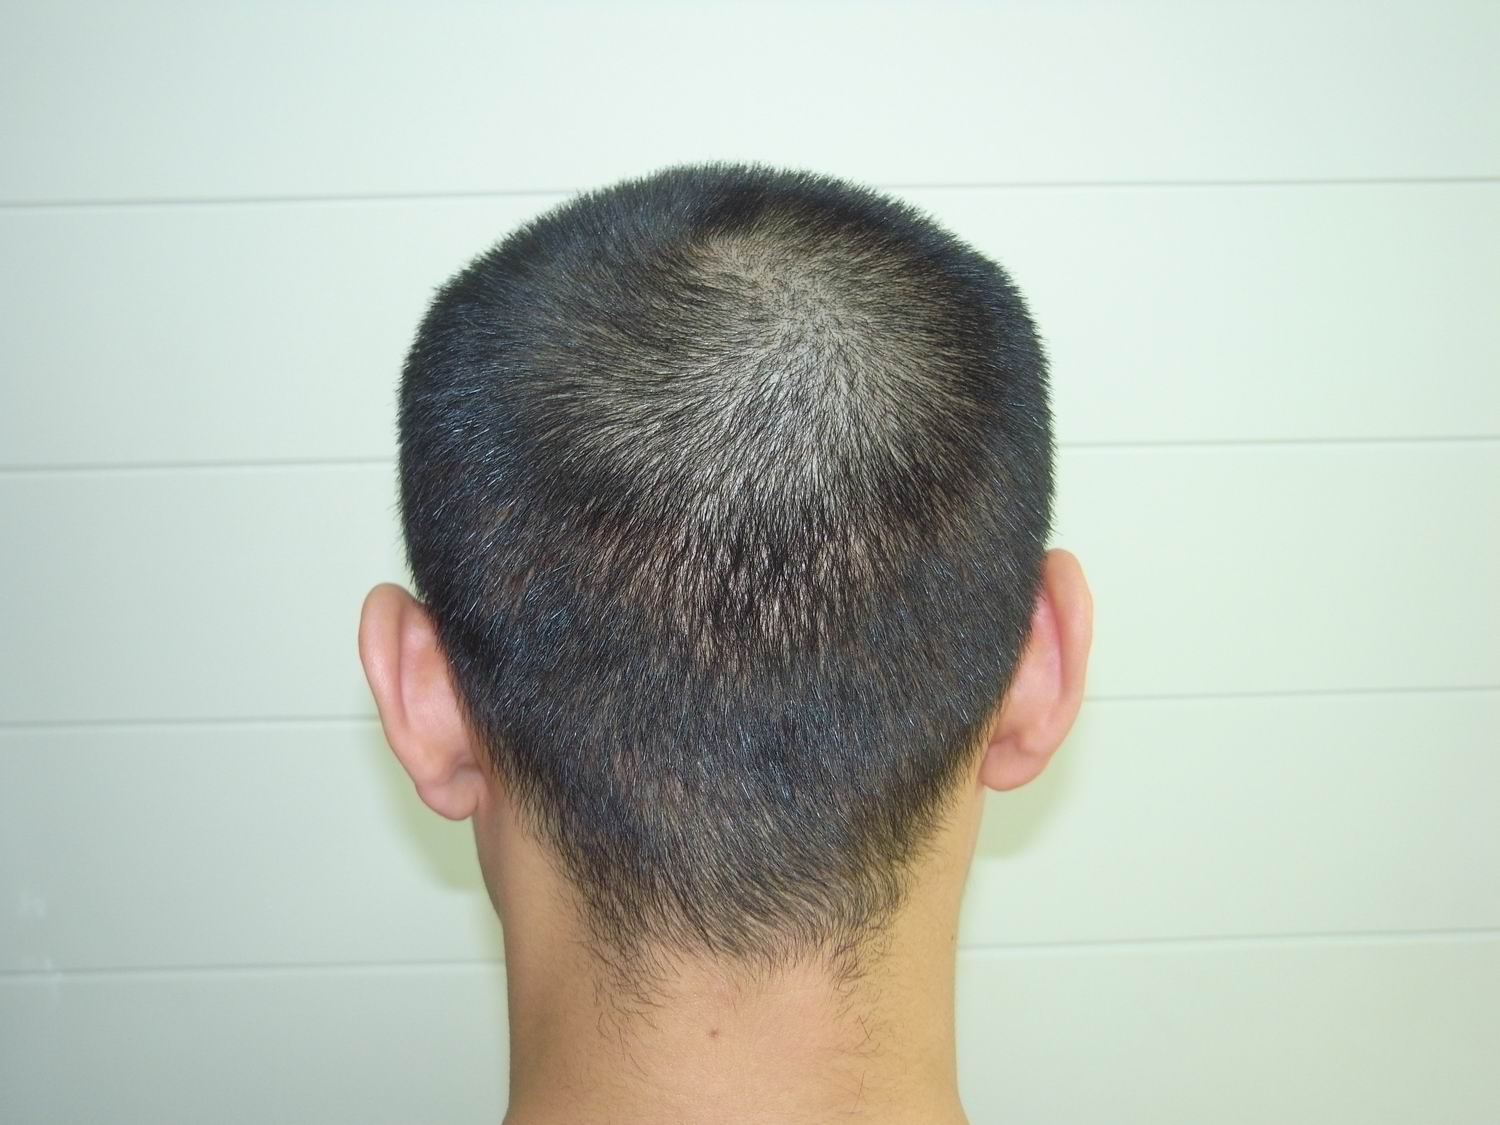 植发2~6个月效果图 - 知乎